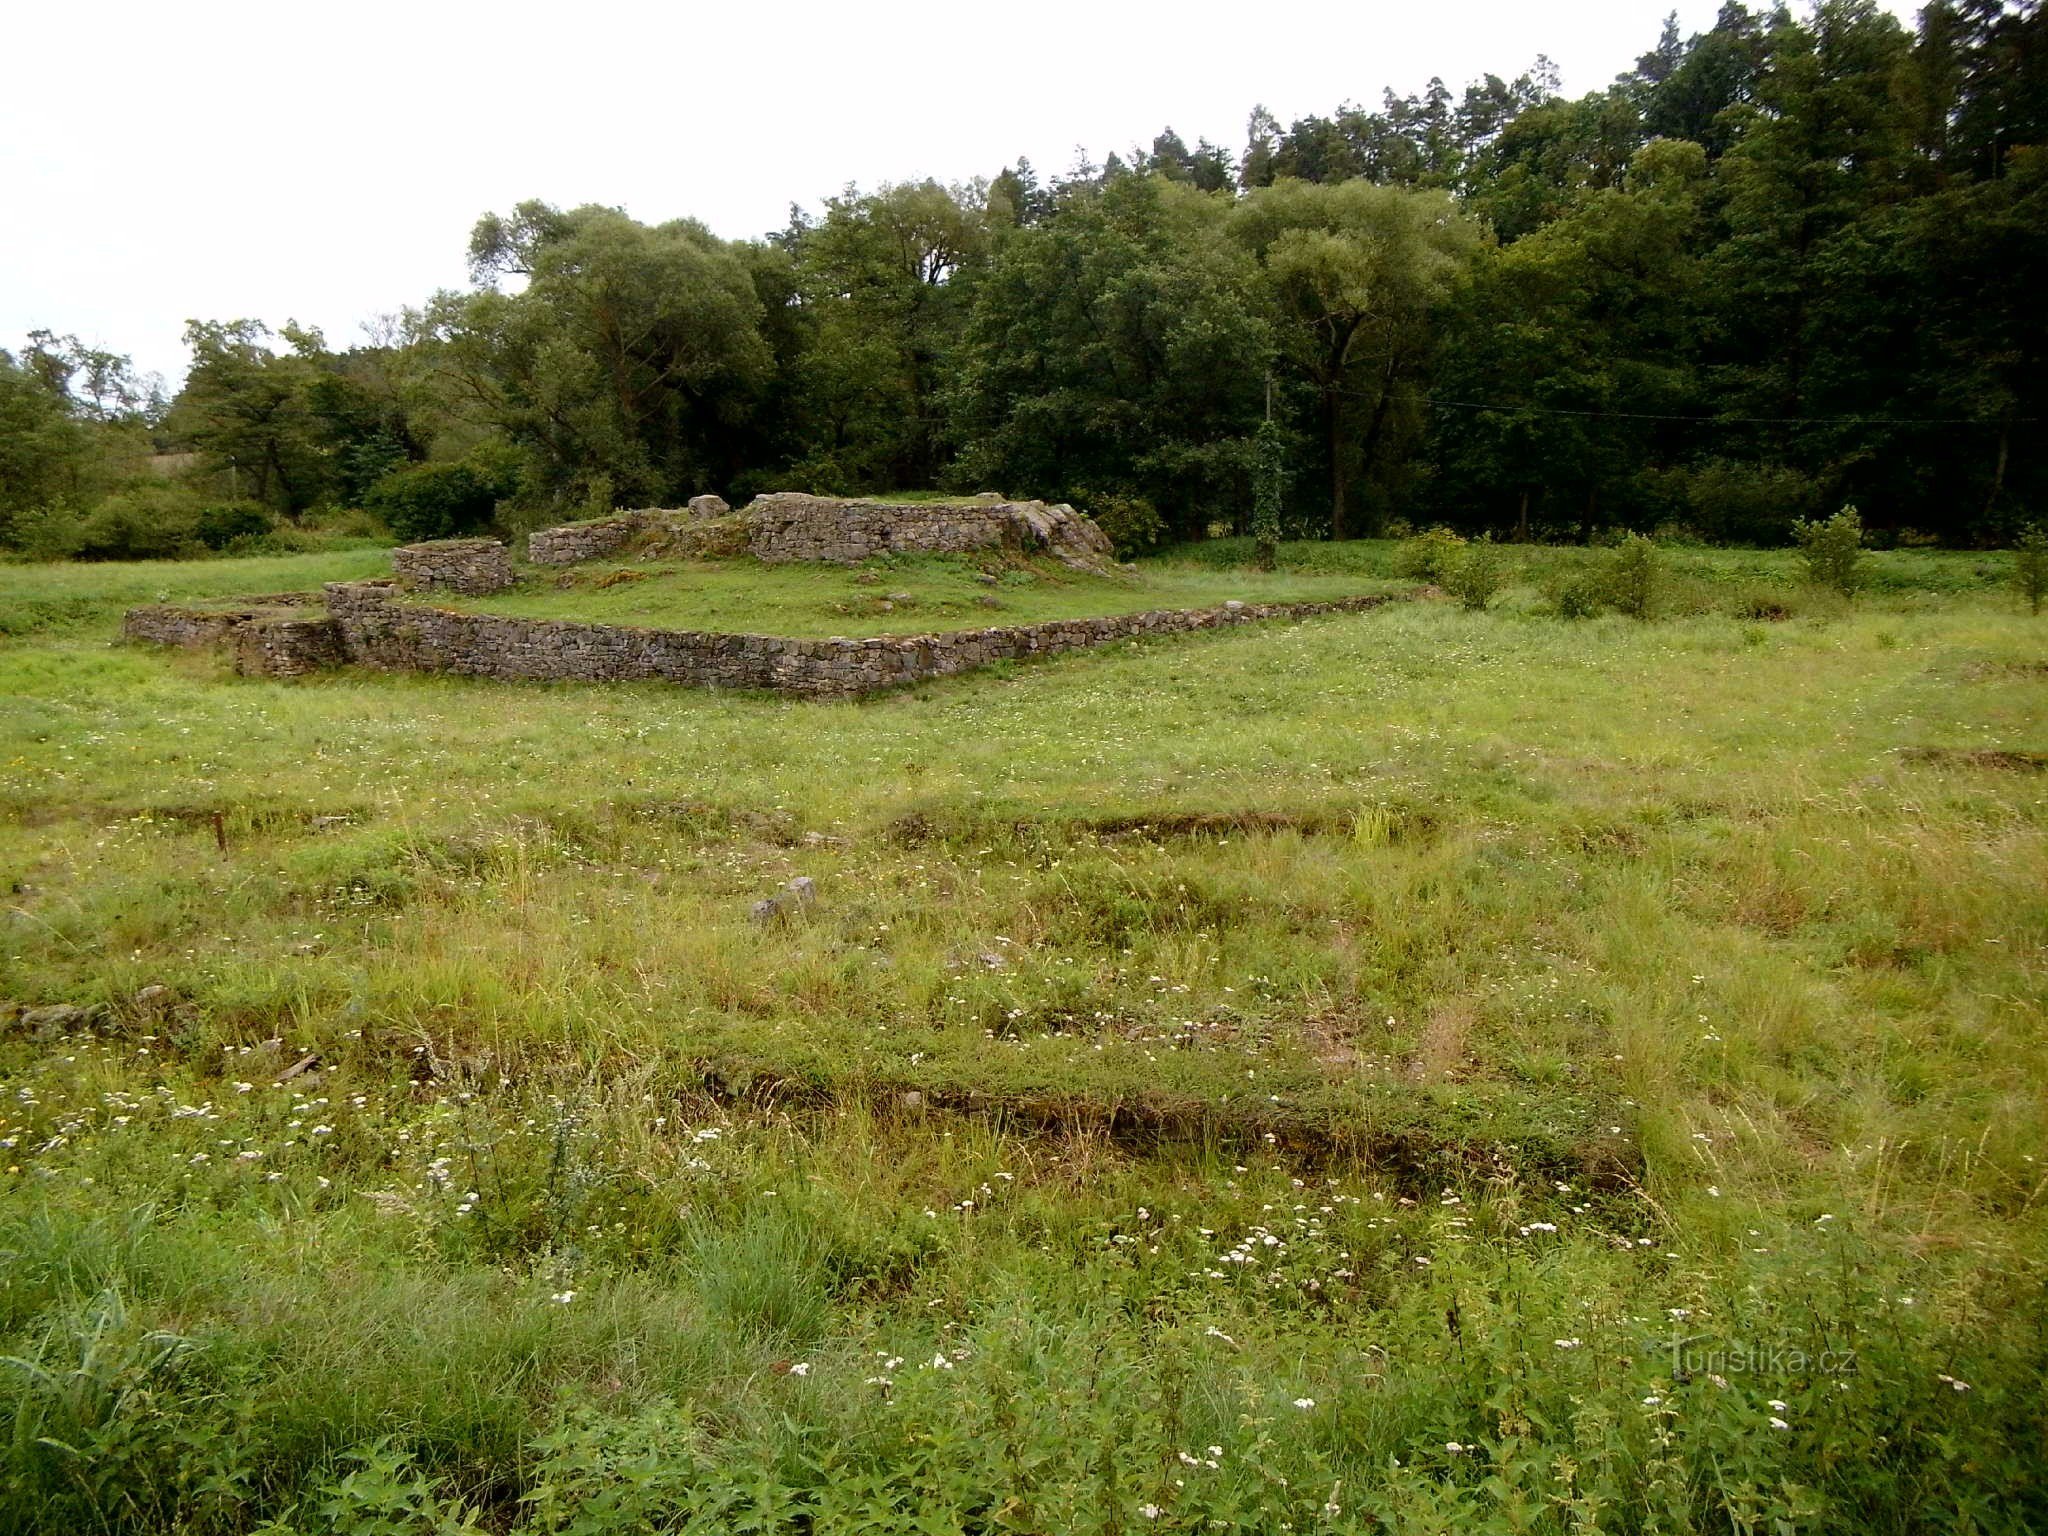 De Hrotovice a Hrotovice a través del extinto asentamiento de Mstěnice